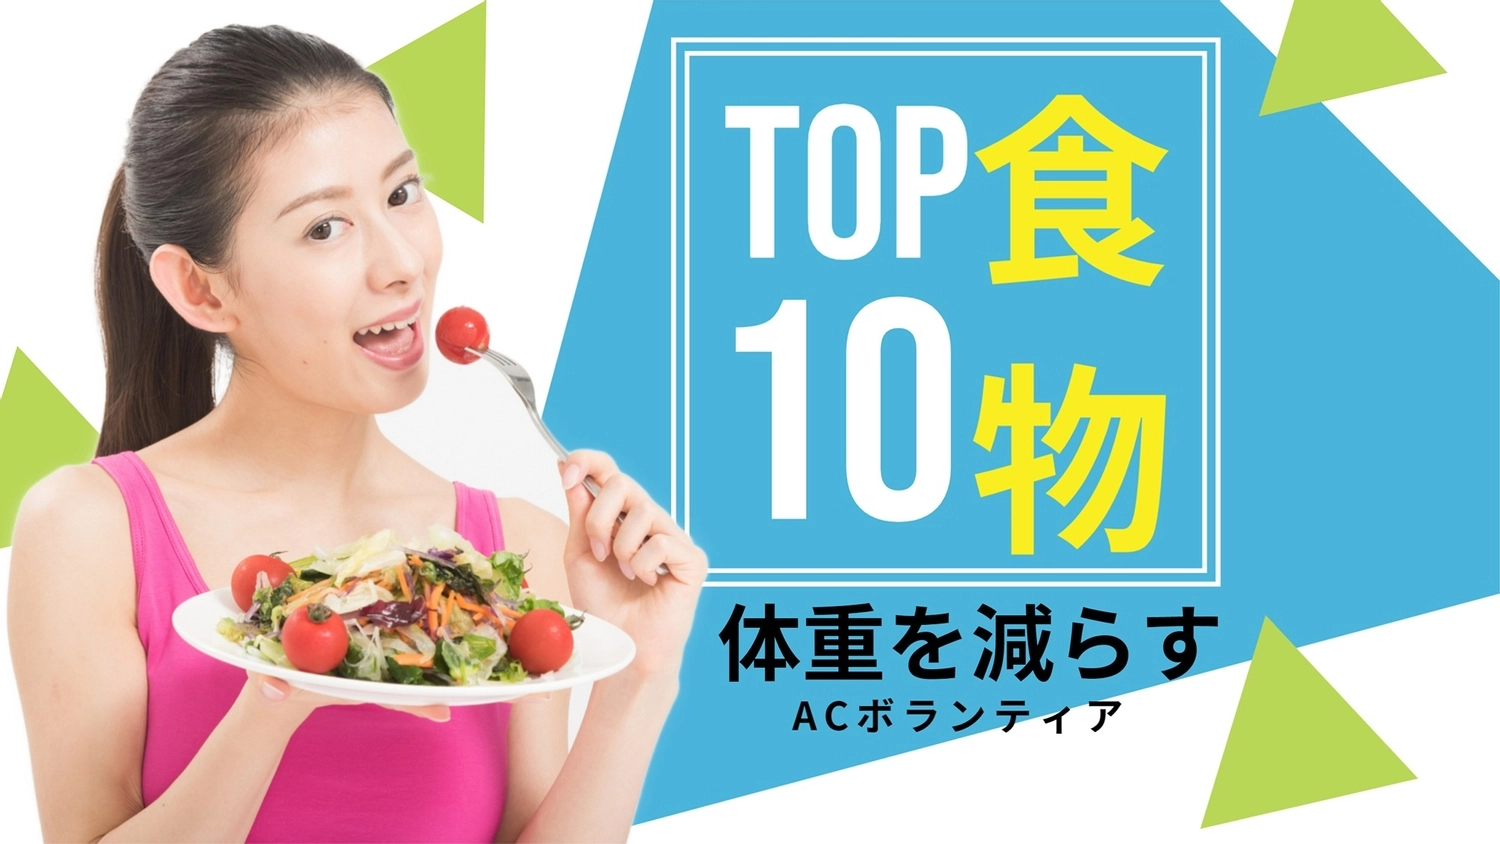 サラダを食べる女性写真のサムネイル, 女士, 人物, 日本人, YouTube縮圖 模板